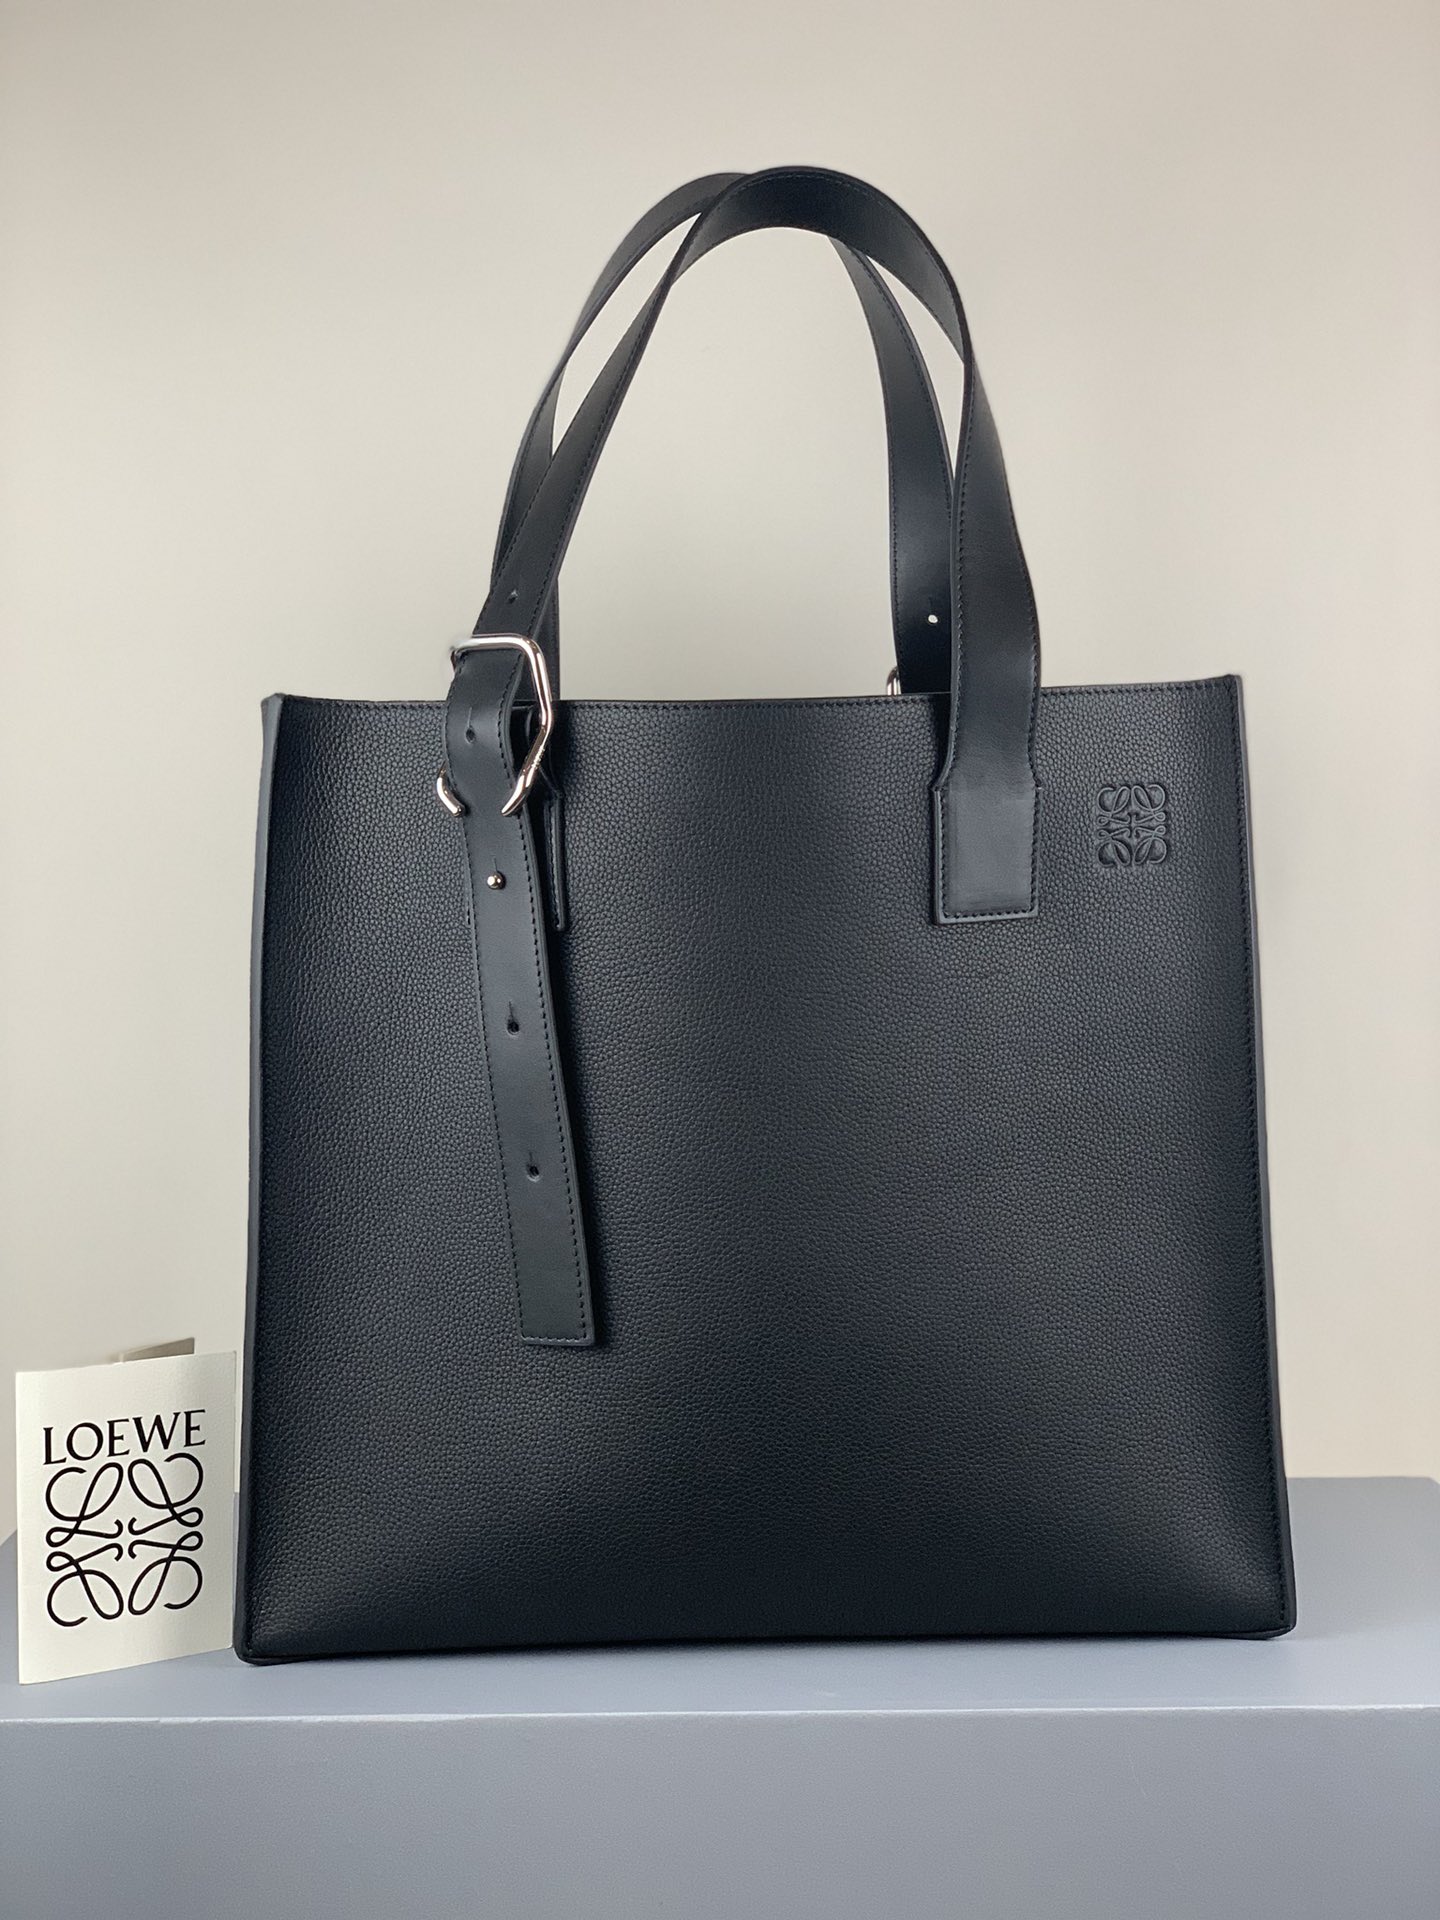 Loewe Handbags Tote Bags Black Genuine Leather